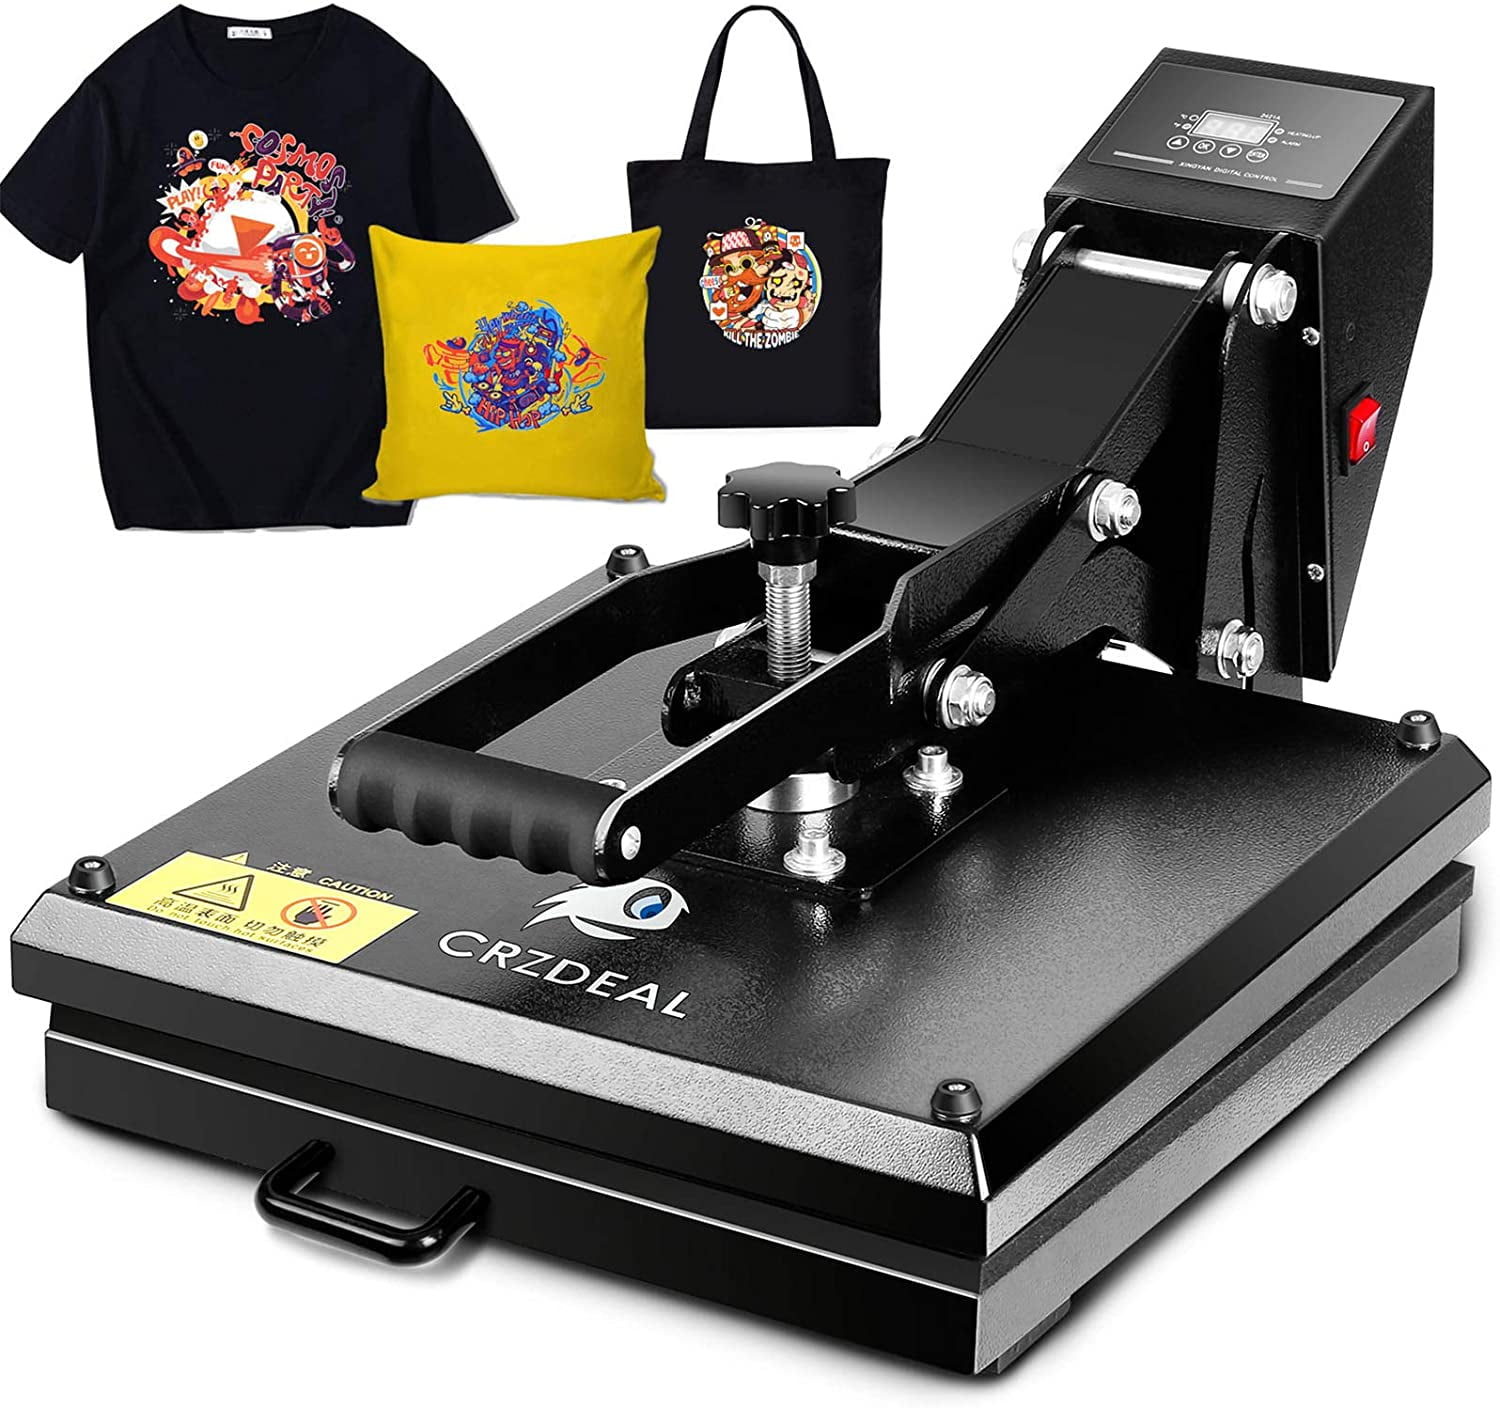 Ticfox 12X10  Heat Press Dual Digital Heat Press Machine 800W